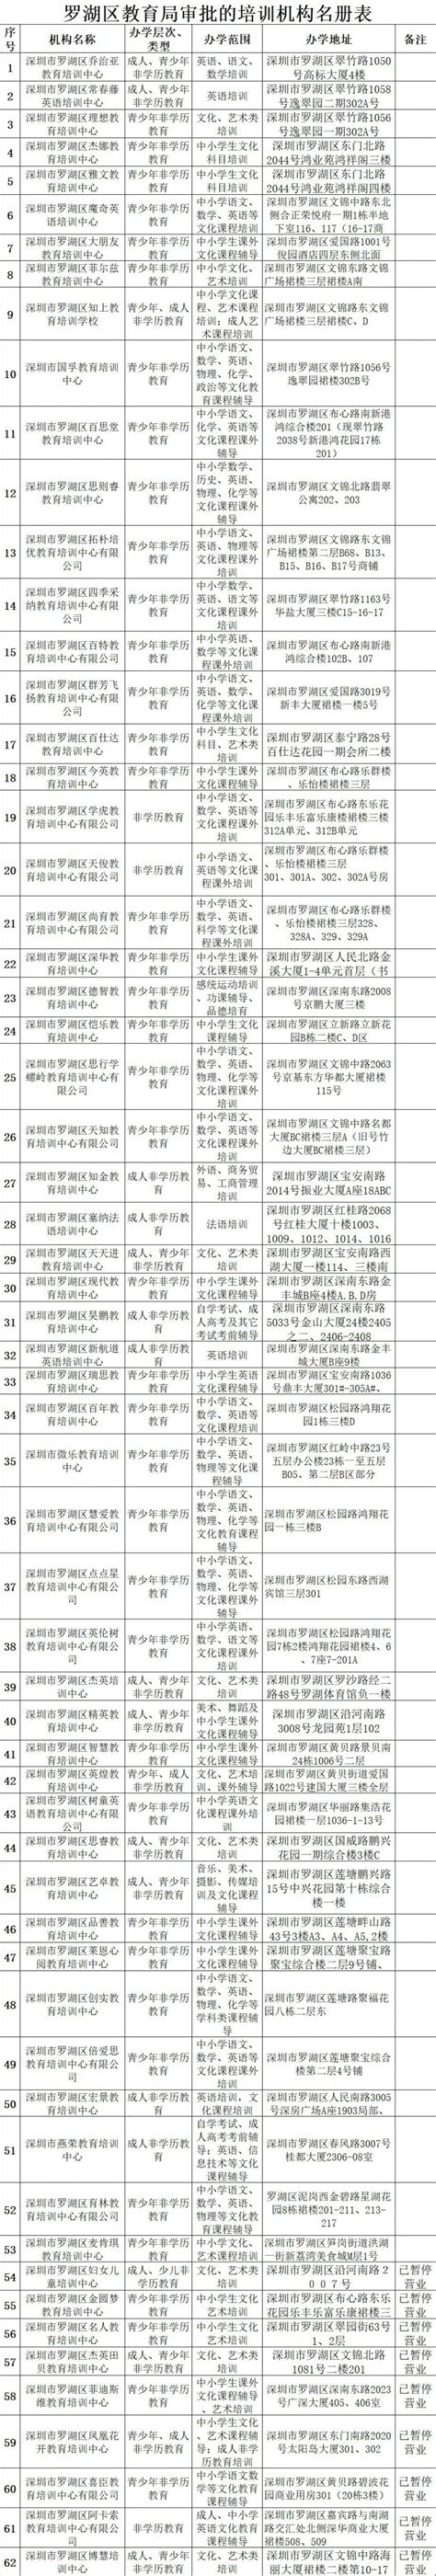 罗湖区教育局发布通知 严禁校外培训机构开展任何形式线下培训 - 深圳本地宝